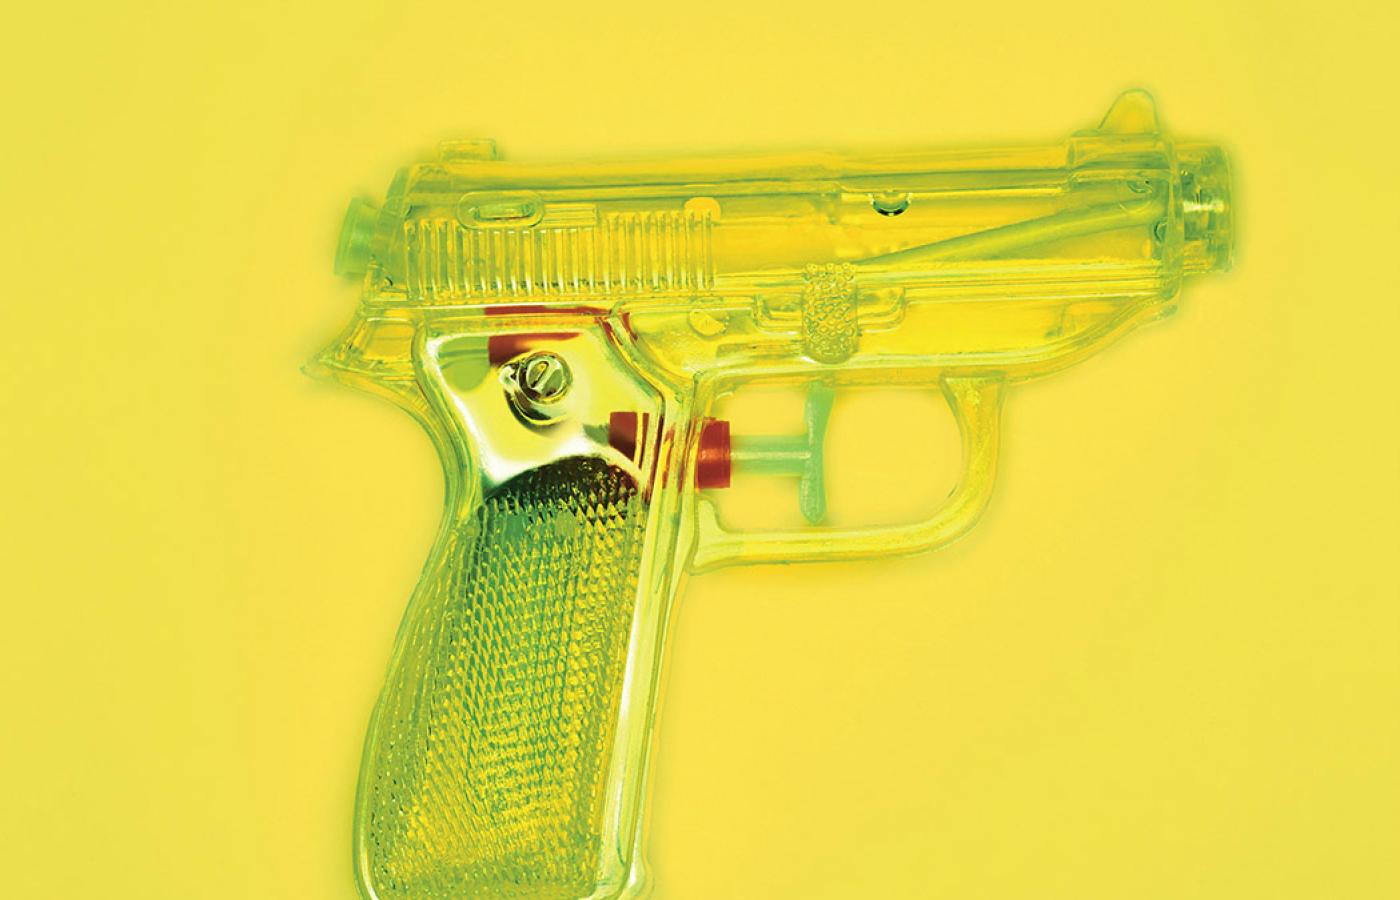 Wysiadł pod supermarketem. Kupił zabawkowy pistolet na kulki z plastiku. Miał pomysł.